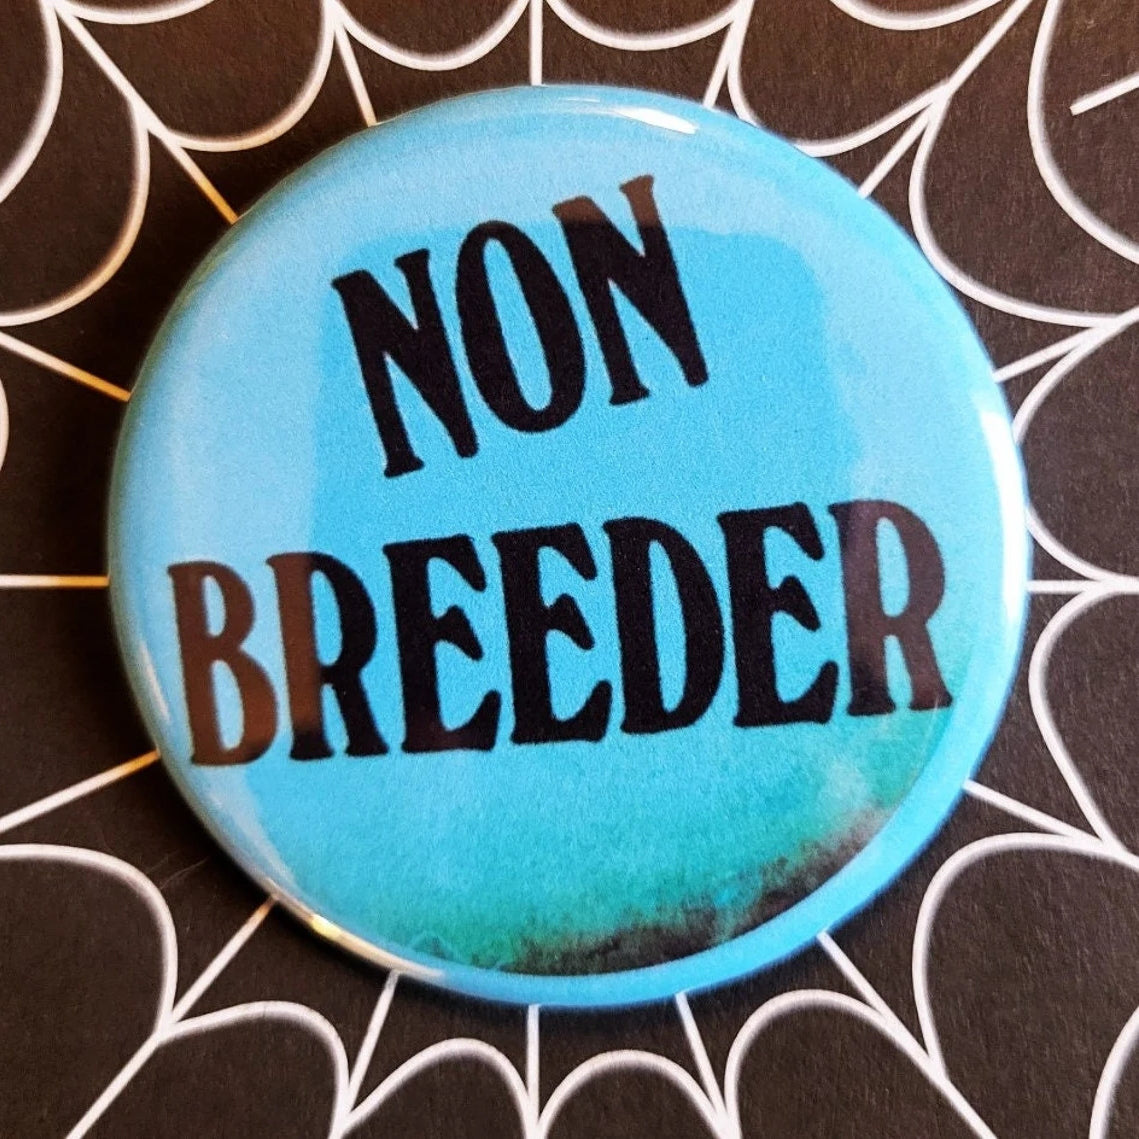 1.25” round button with “NON BREEDER” written in black on bright blue background 